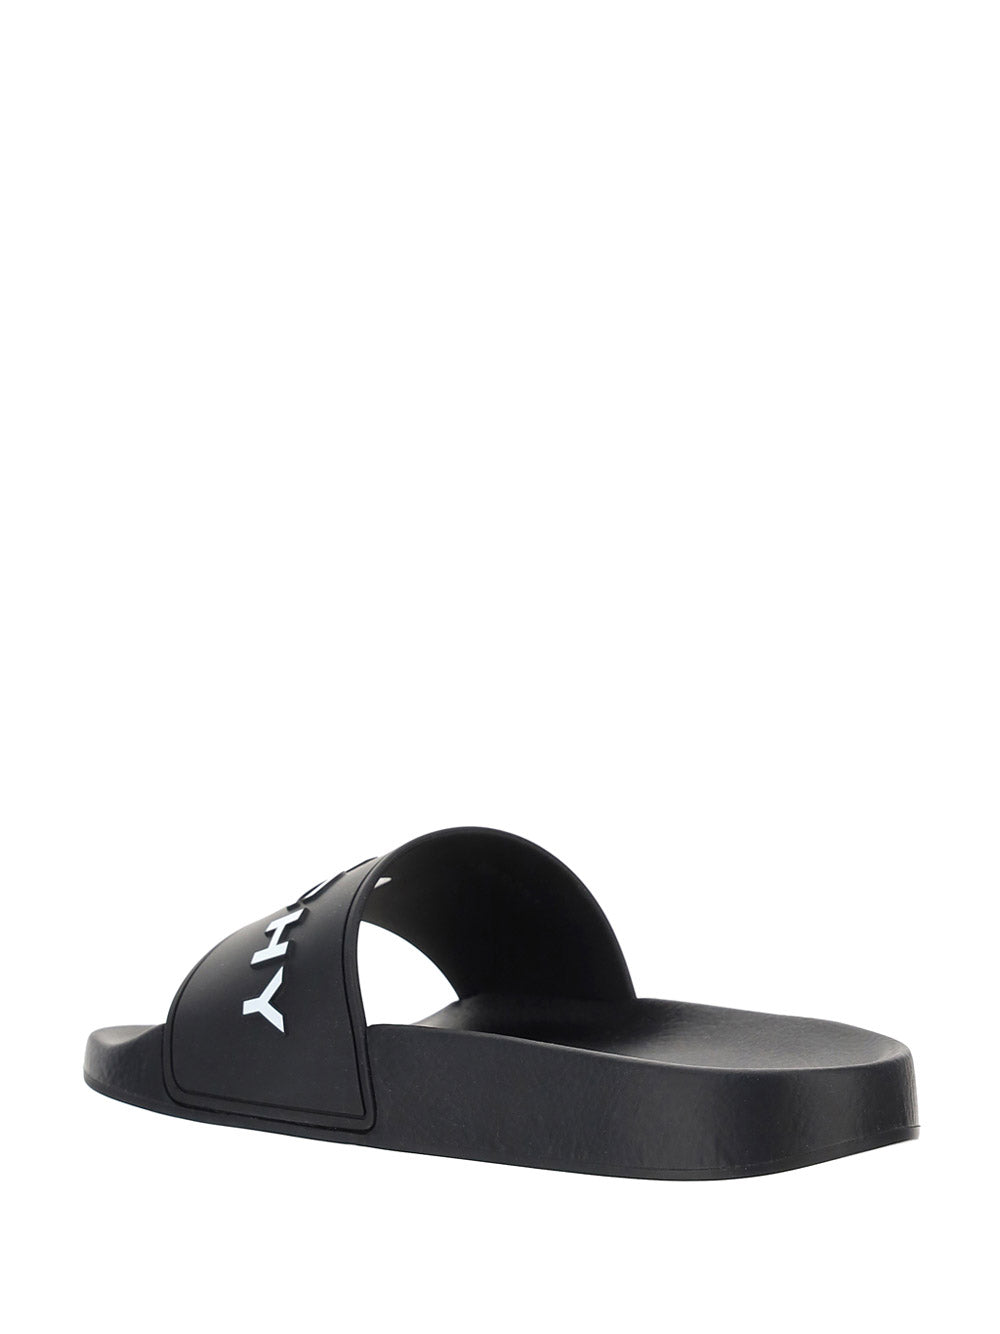 Women's Paris Flat Sandals - Black